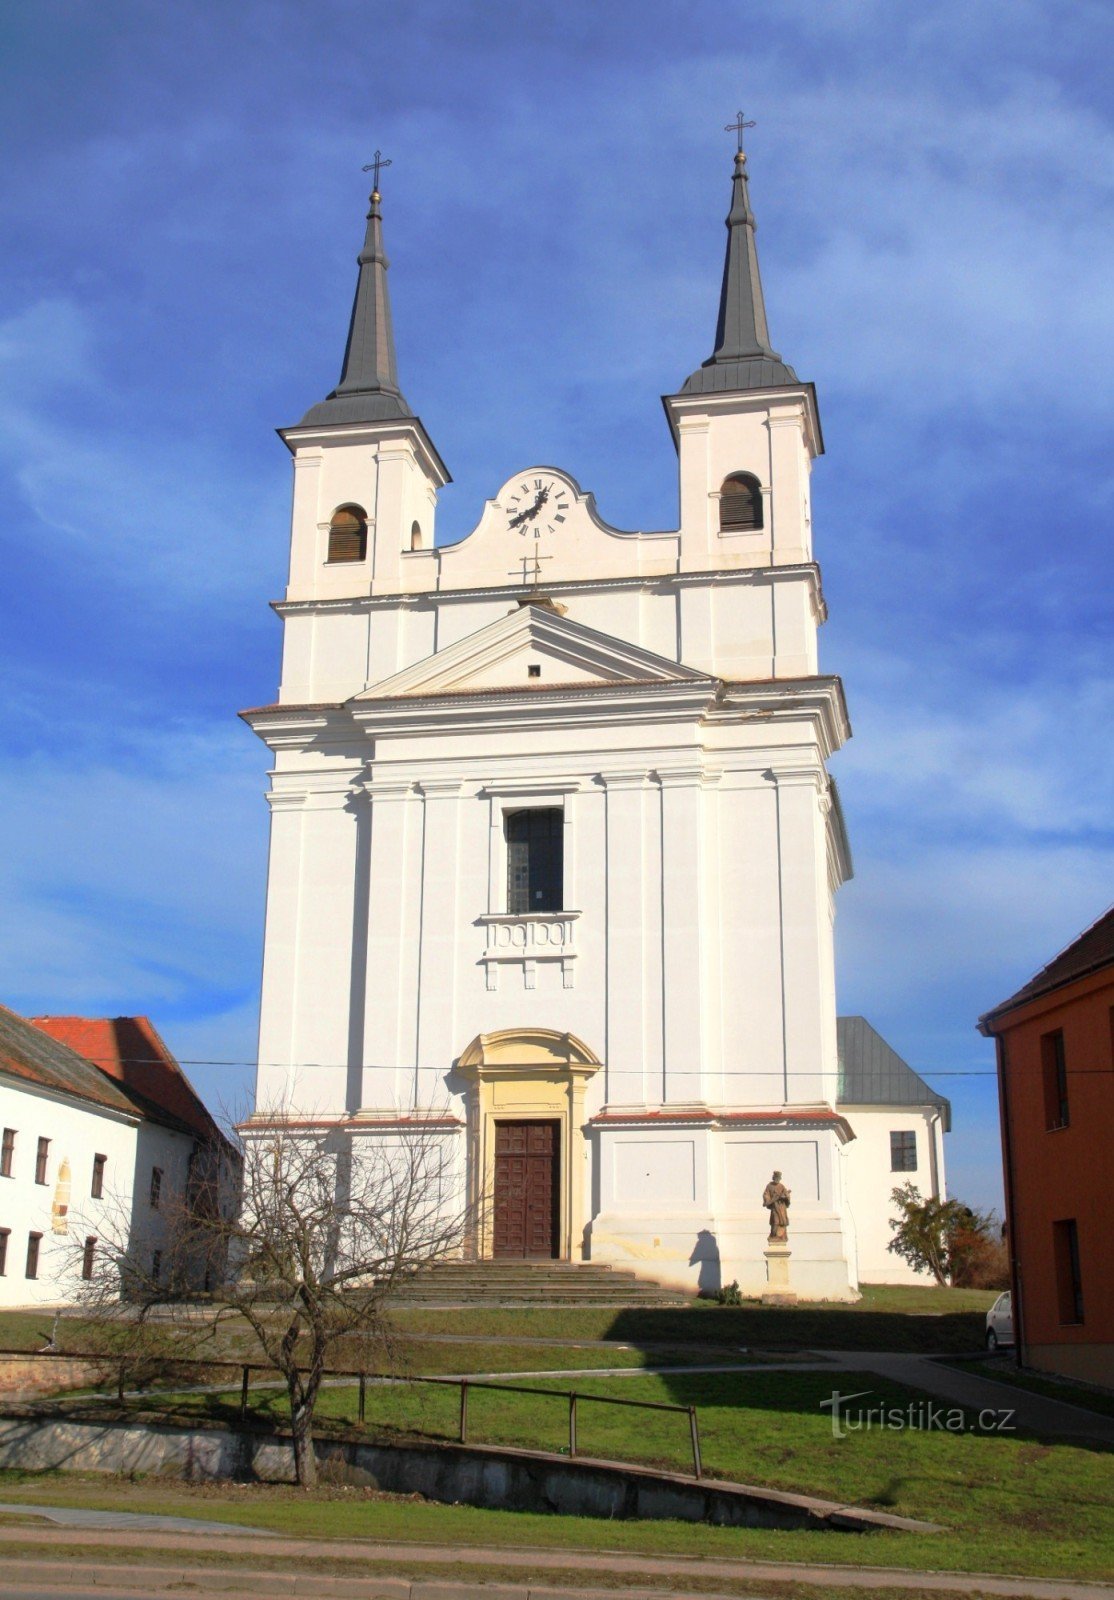 Drnholec - Den heliga treenighetens kyrka